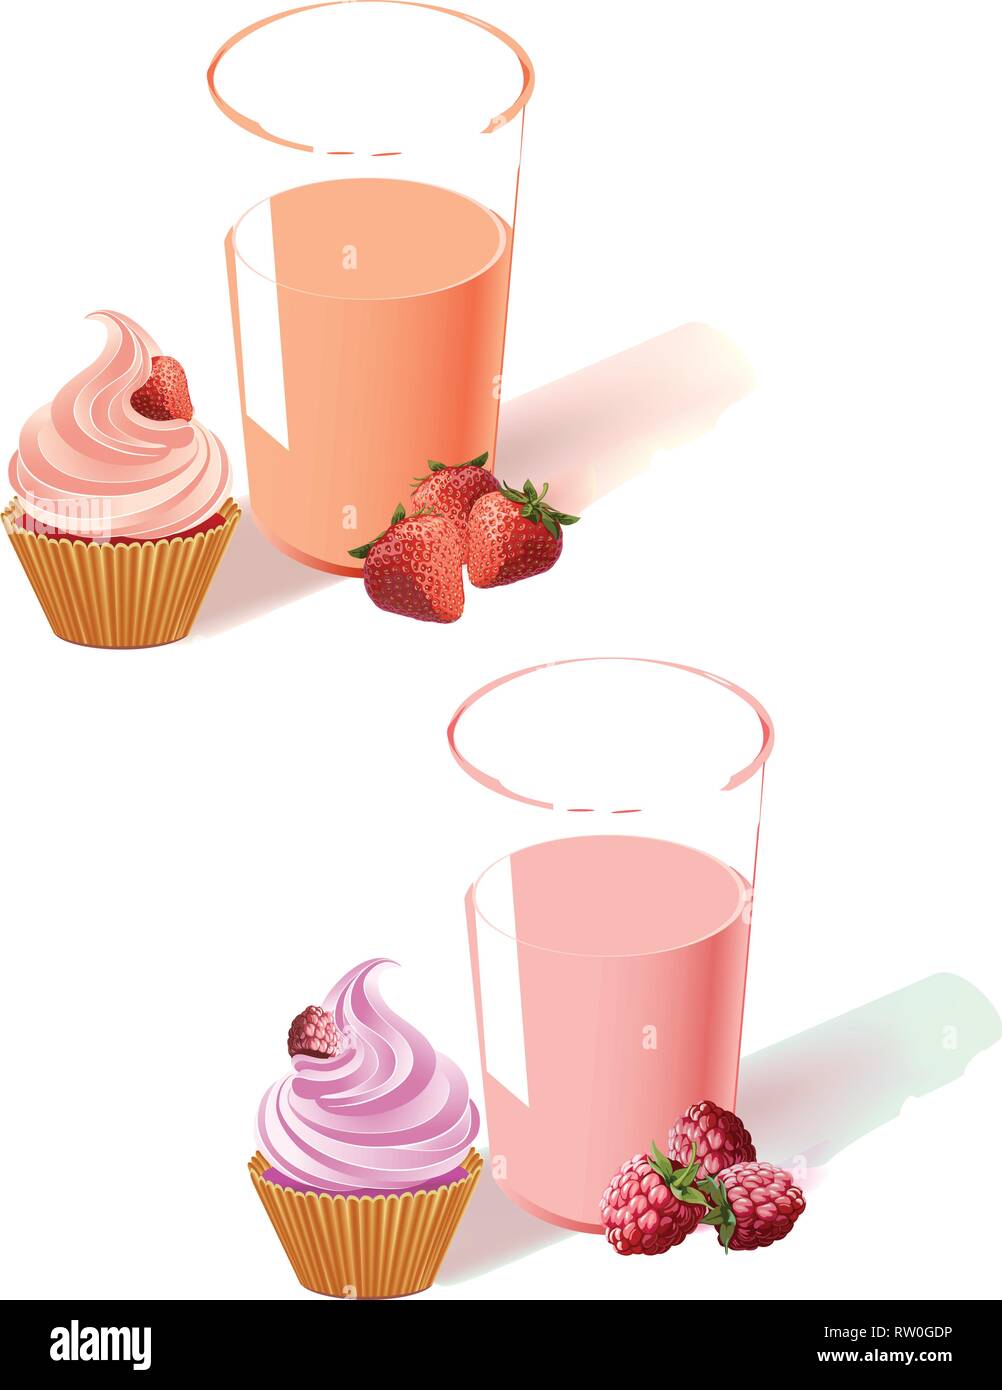 Die Abbildung zeigt die Himbeere und Erdbeere Joghurt im Glas, Obst und Kuchen. Auf weißem Hintergrund, auf separaten Ebenen. Stock Vektor